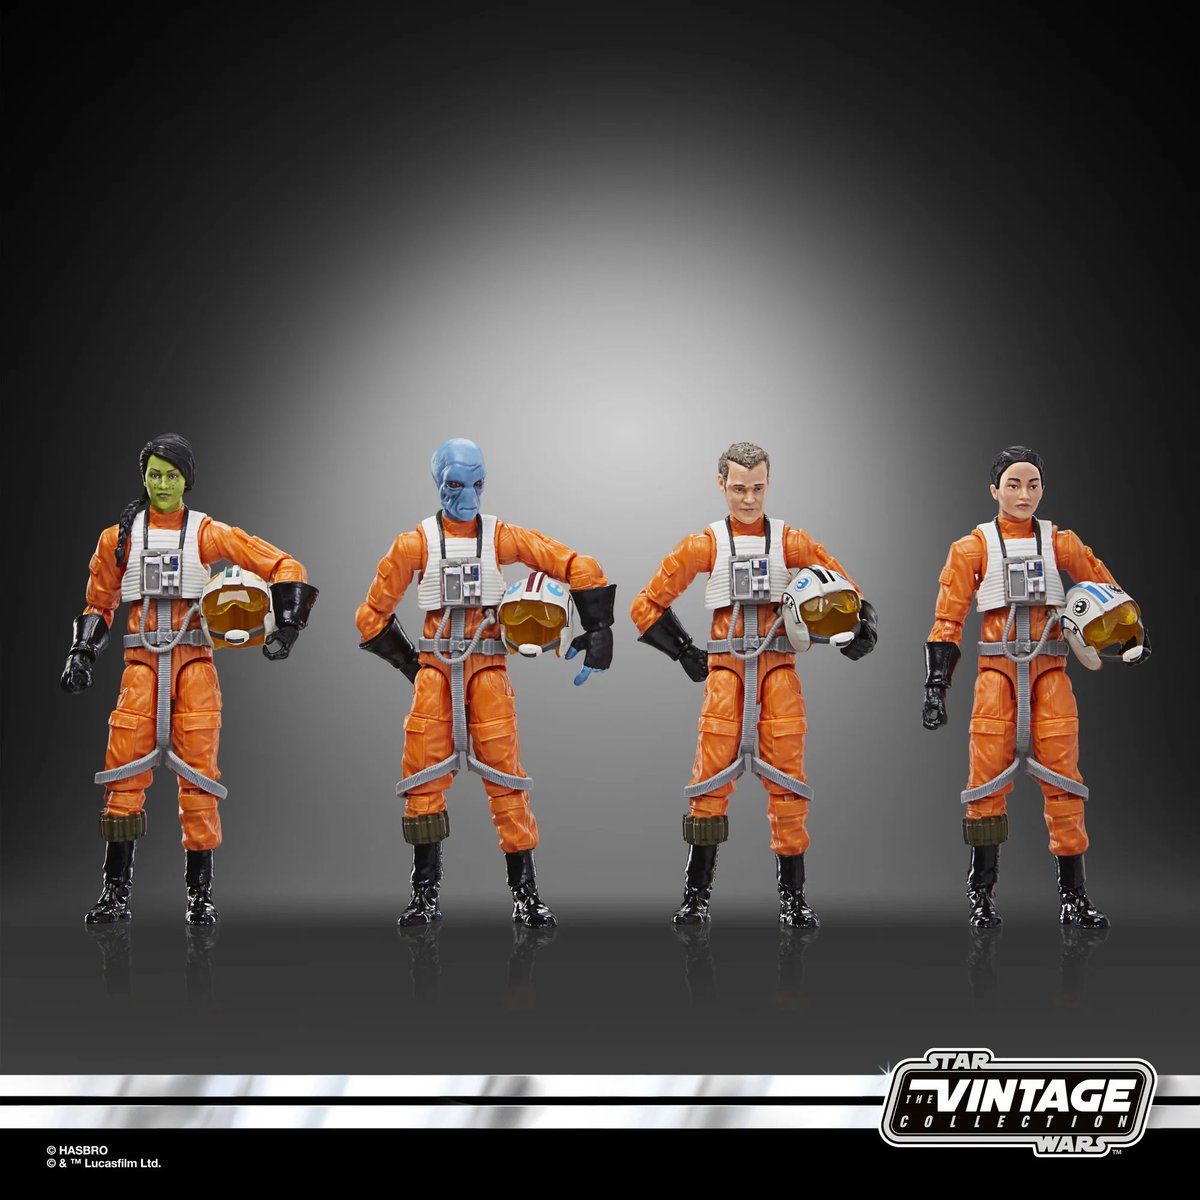 🚨NOVEDAD🚨
📸 Pilotos X-Wing 4-pack
🎬 Star Wars
👉 Hasbro
➡️ The Vintage Collection
📅 Sep. 2024
💶 64.99€ en @HasbroPulse
📝 Ya en preorder
🤔 Multipack de pilotos de X-Wing de distintas razas.

#StarWars #TheVintageCollection